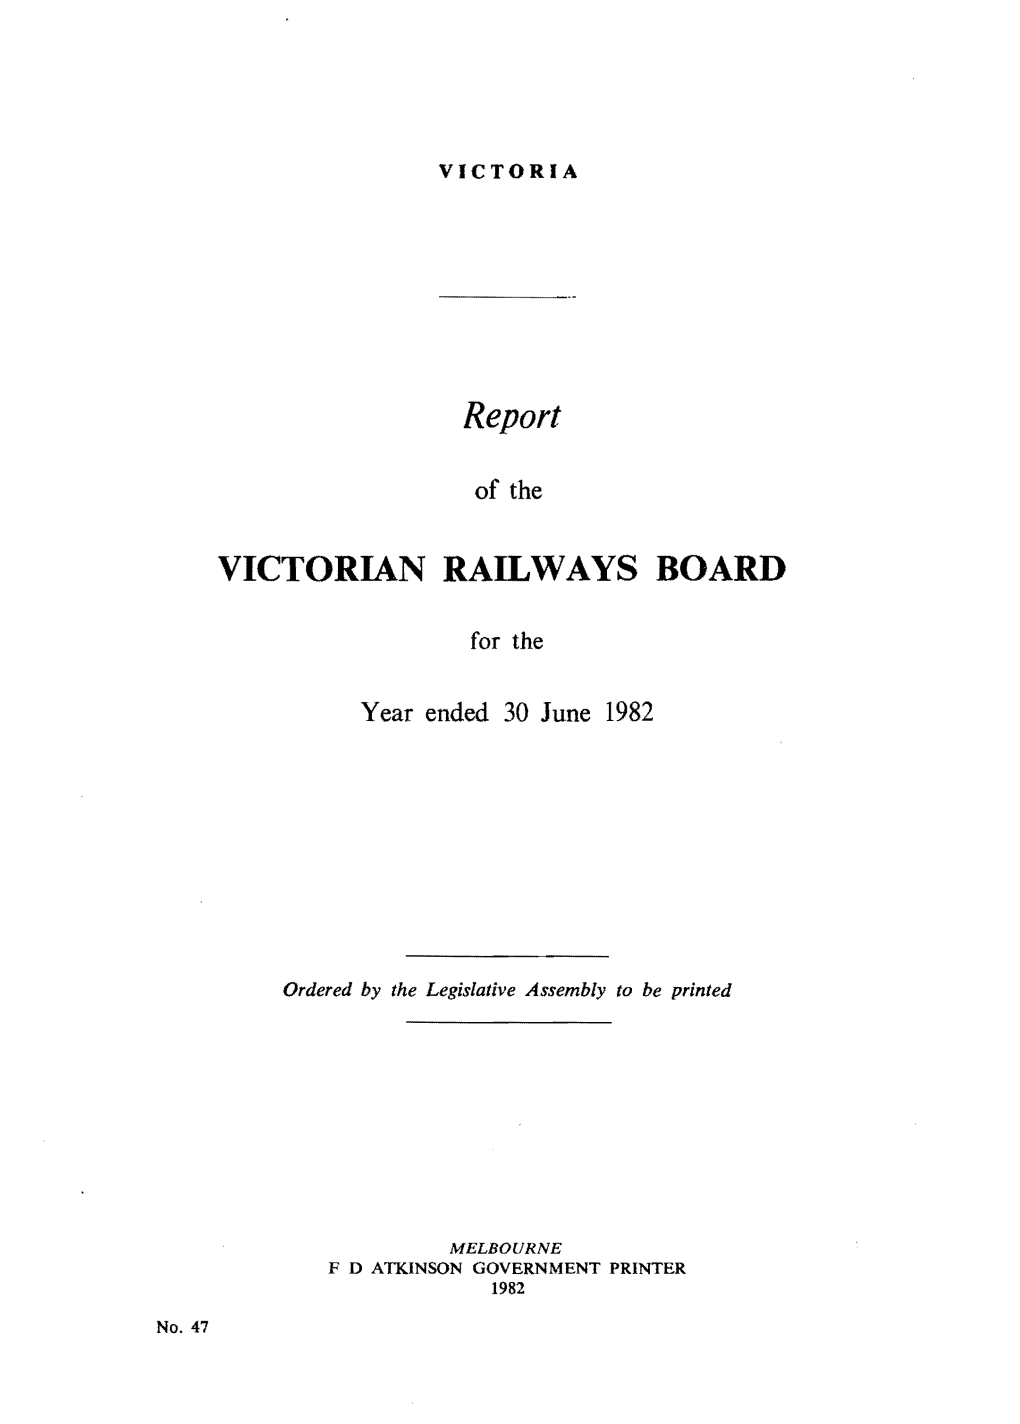 VR Annual Report 1982